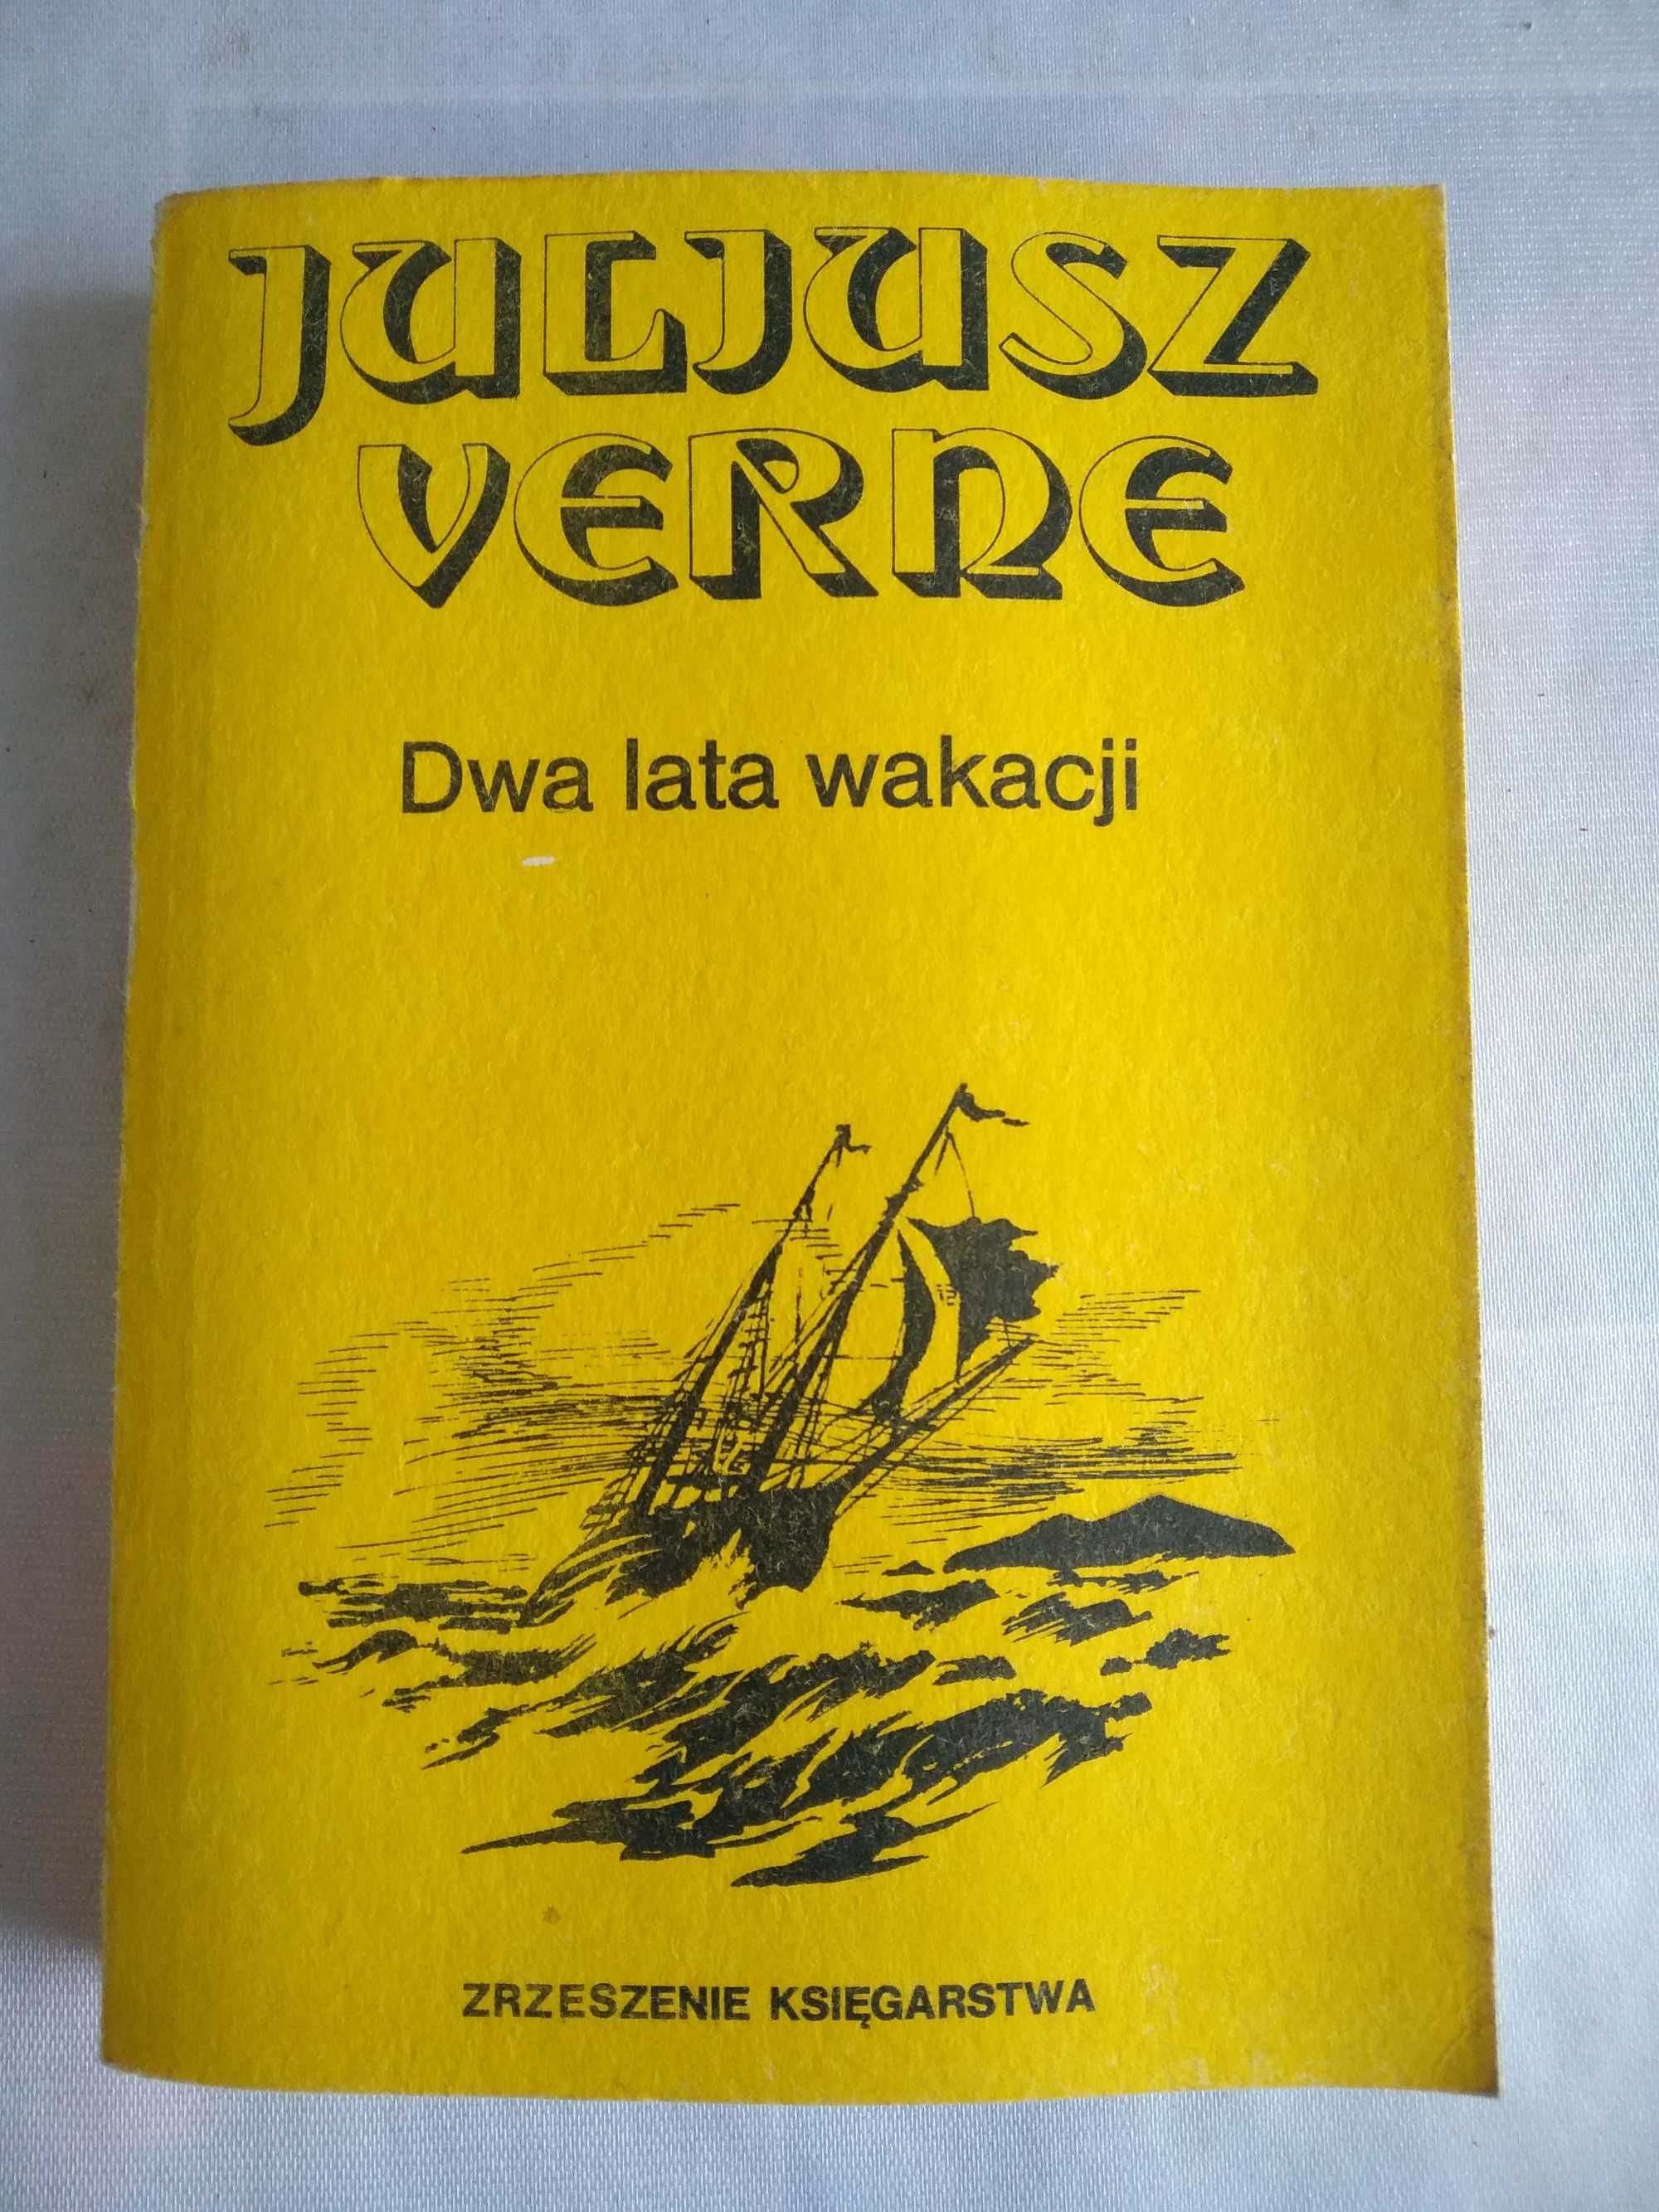 "Dwa lata wakacji" Juliusz Verne